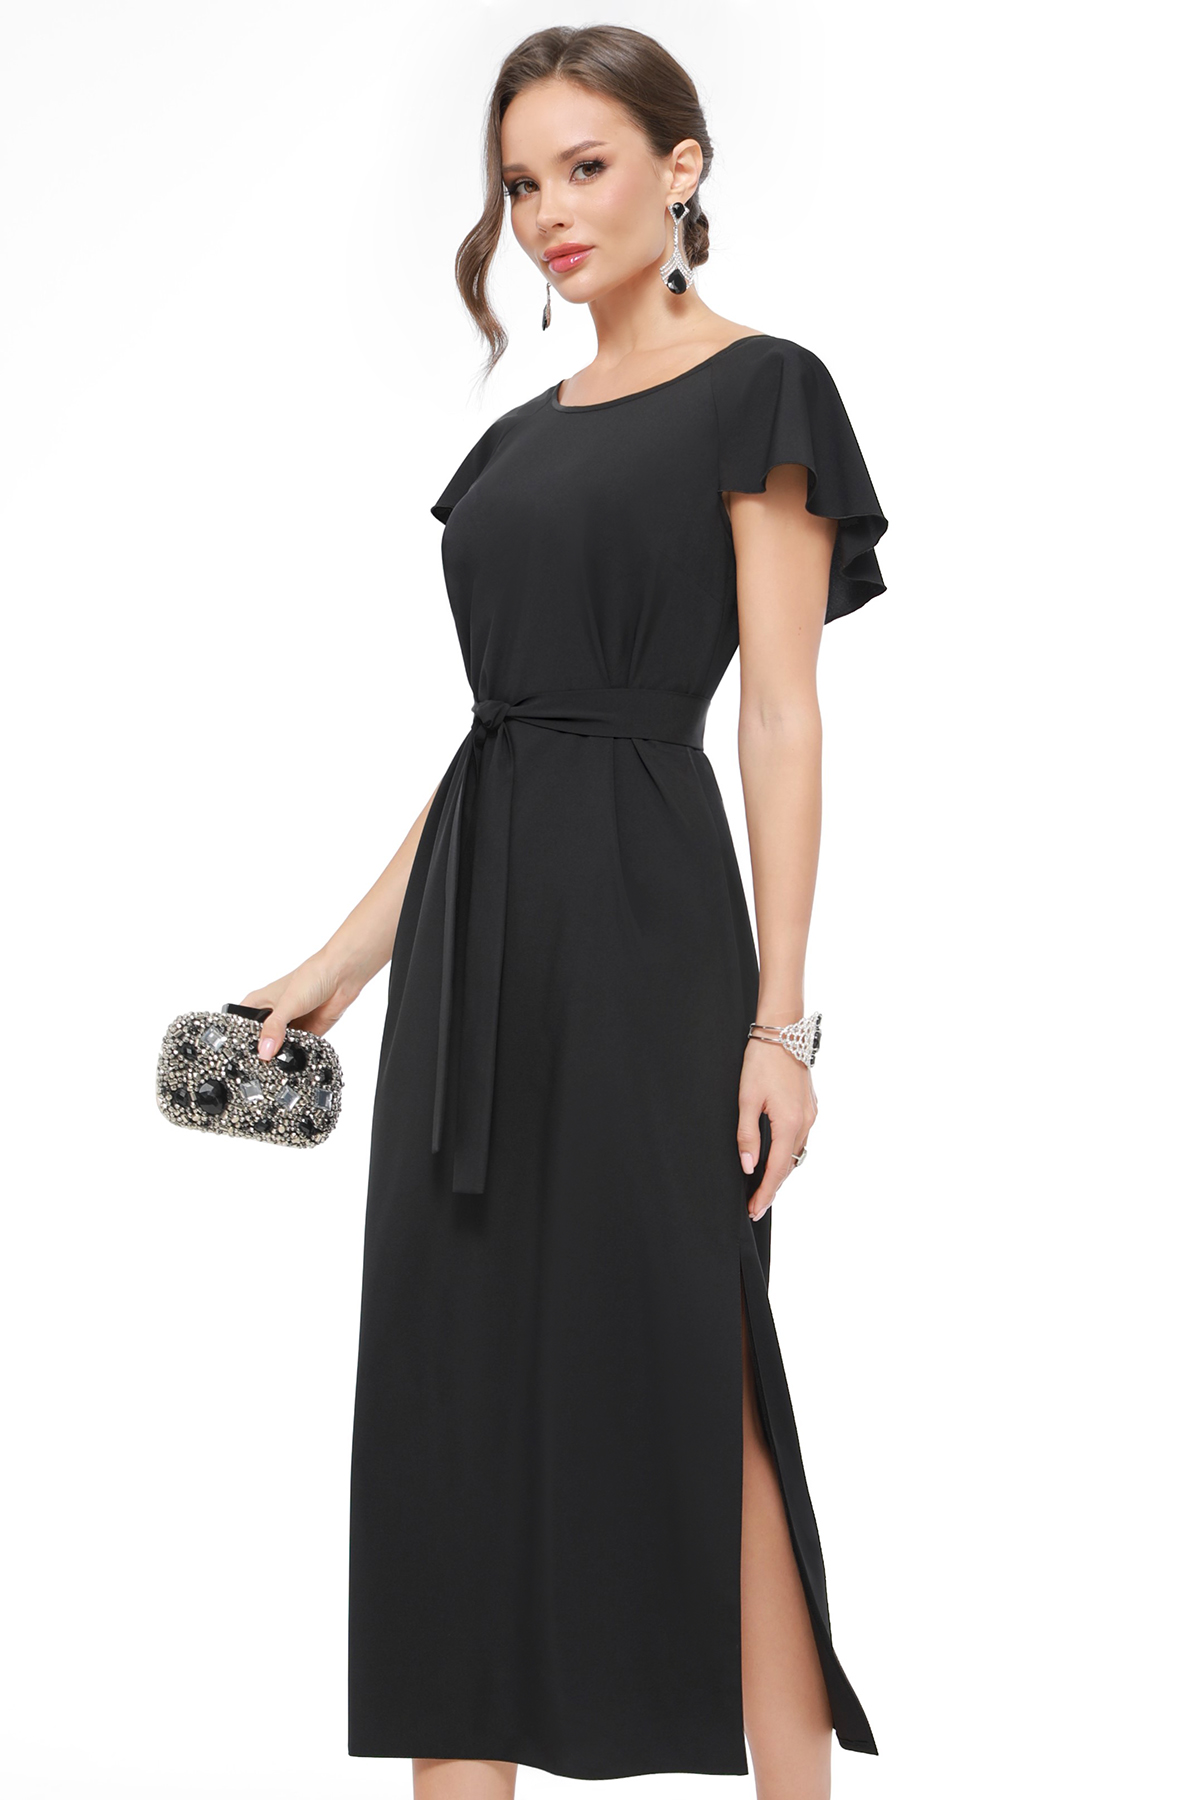 Платье женское DSTrend 0430 черное 50